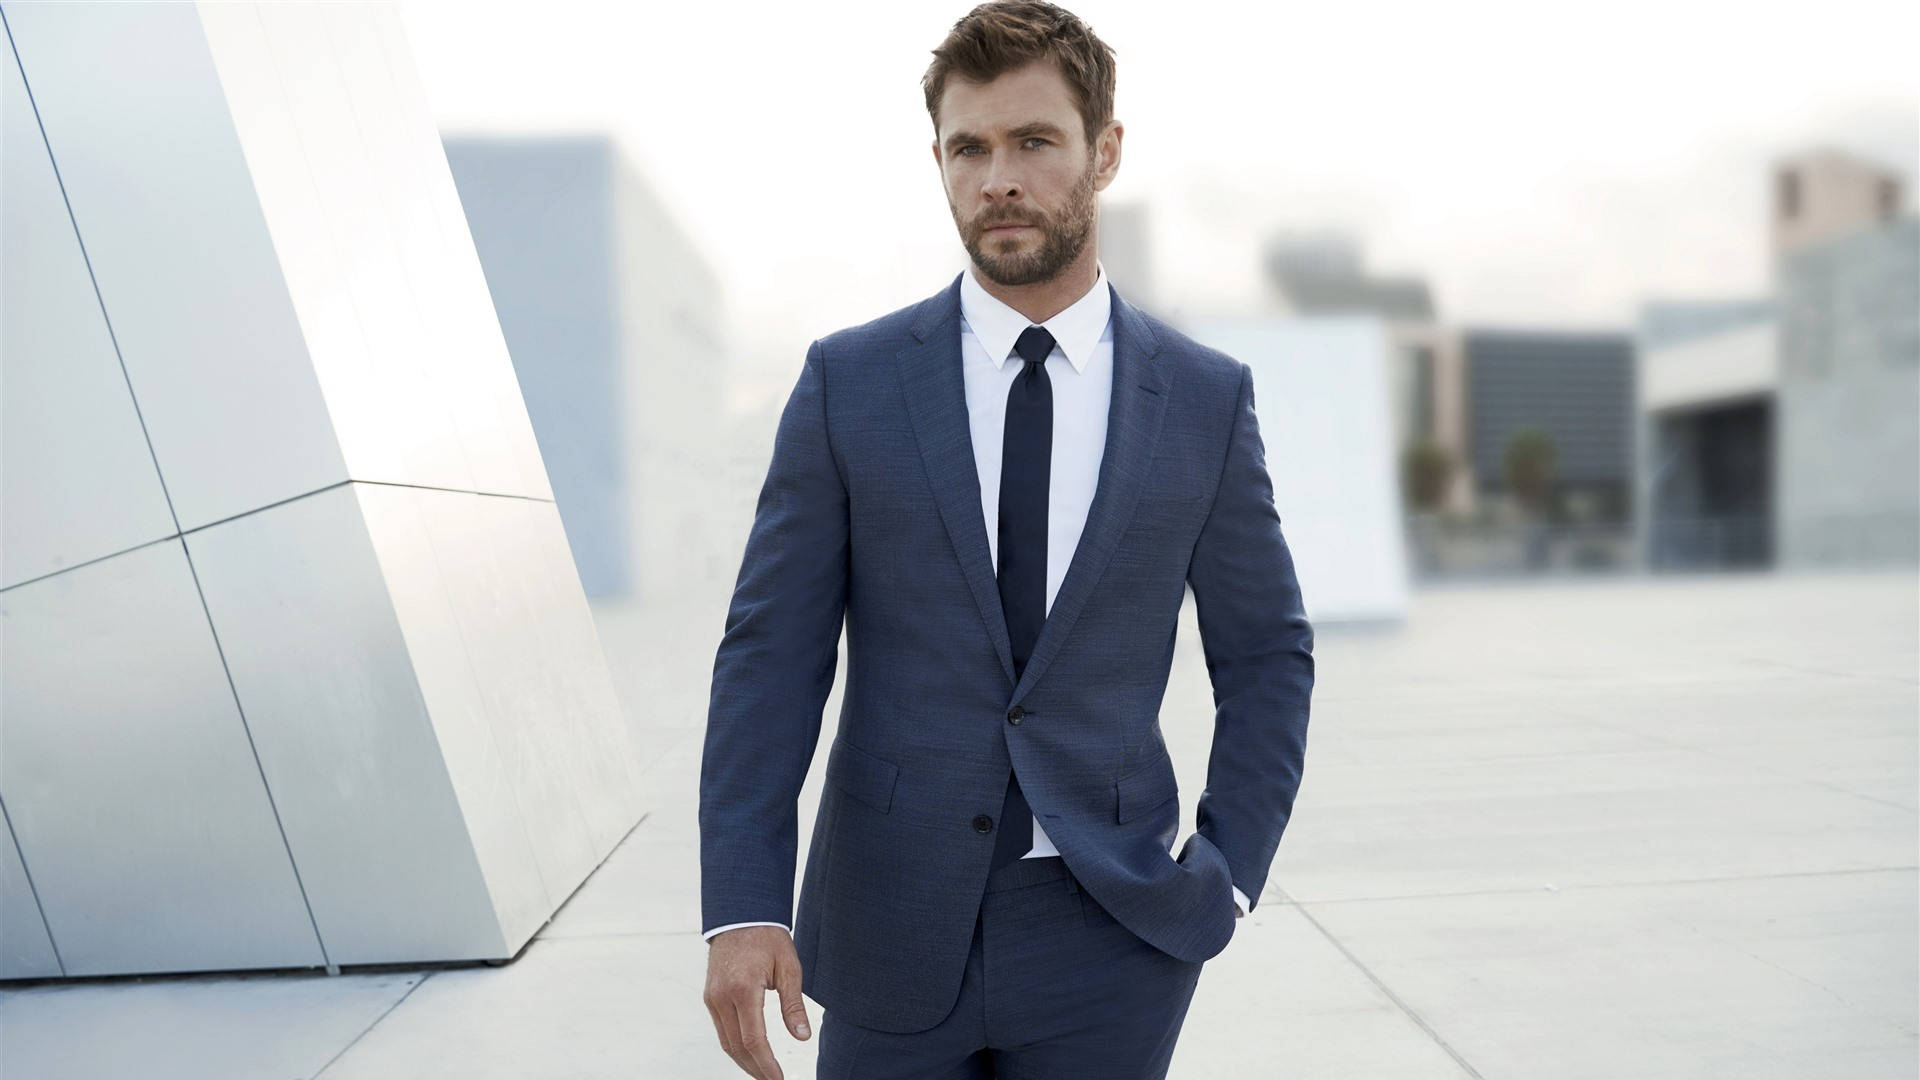 Chris Hemsworth In Suit